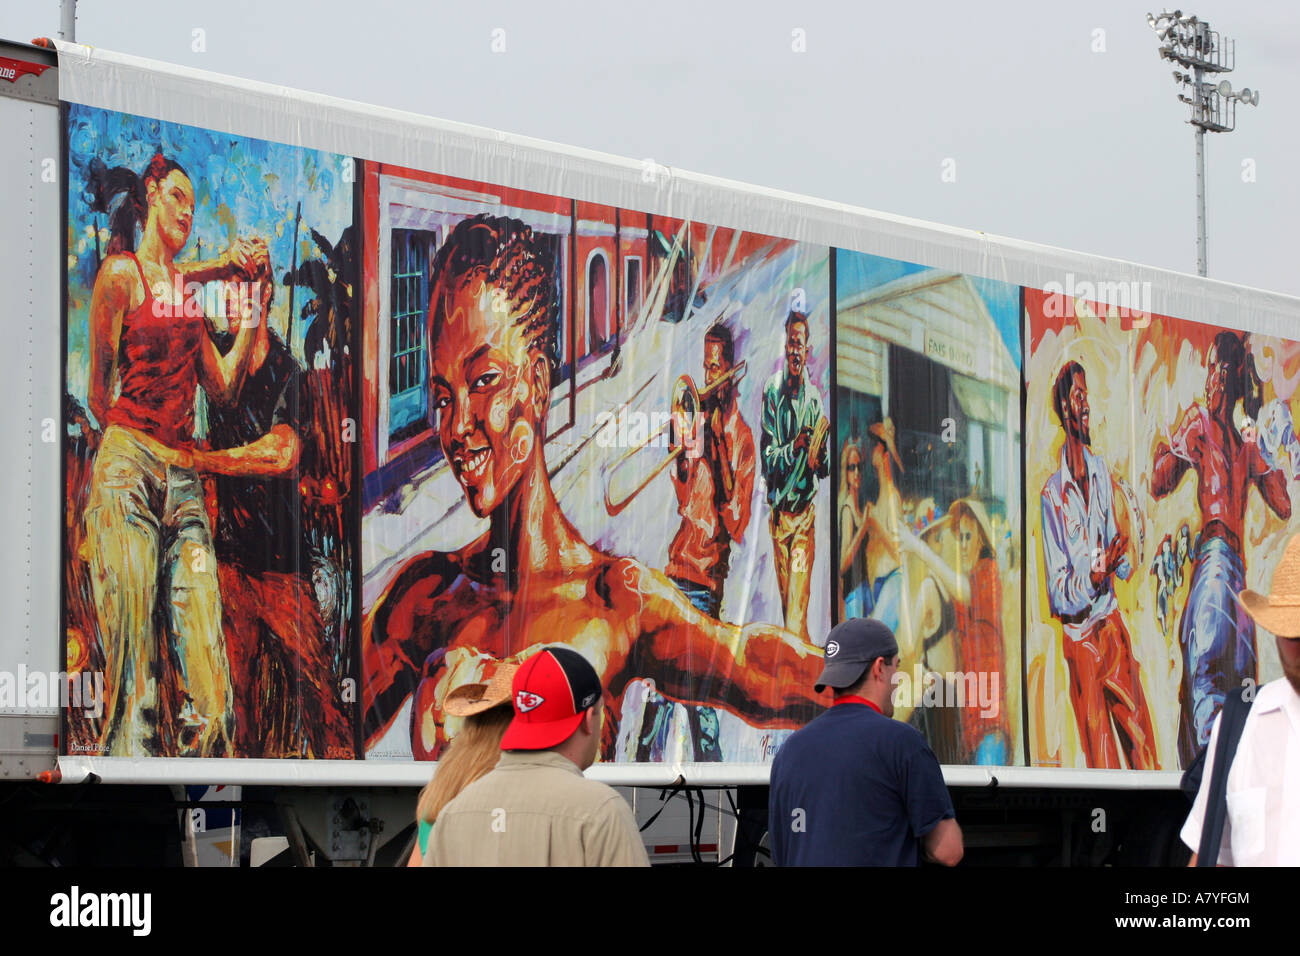 La gente camminare passato poster colorati a New Orleans Jazz & Heritage Festival, New Orleans, LA, STATI UNITI D'AMERICA Foto Stock